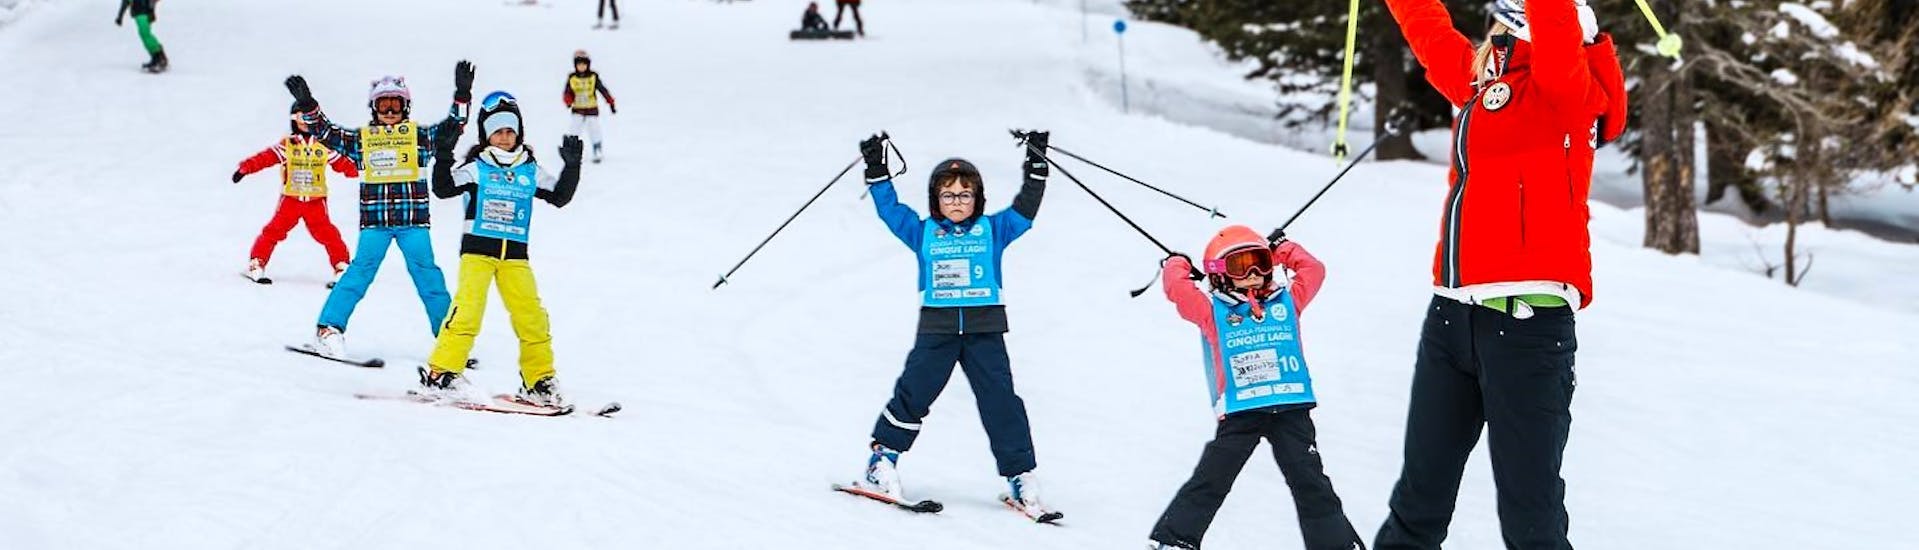 Clases de esquí para niños a partir de 4 años.